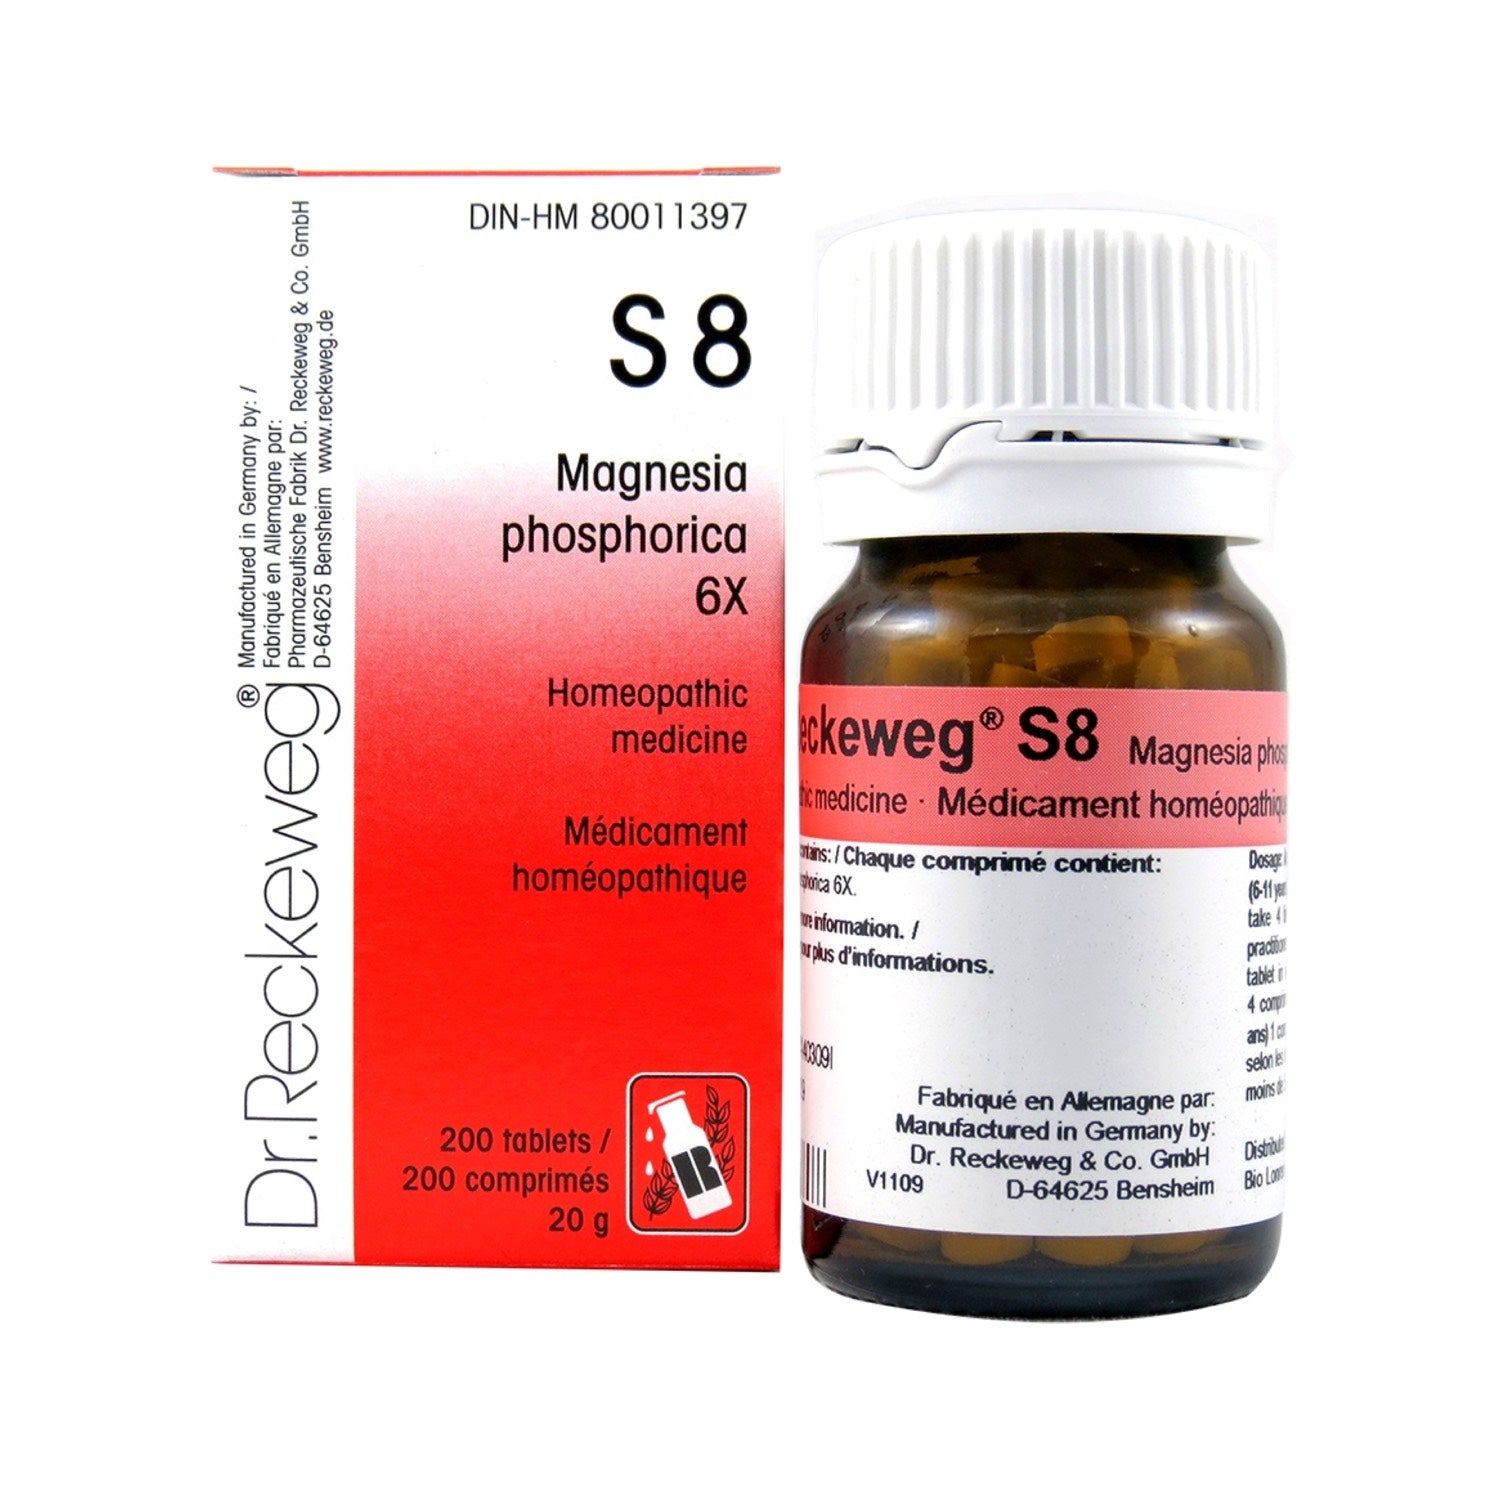 S8 Magnesia phosphorica